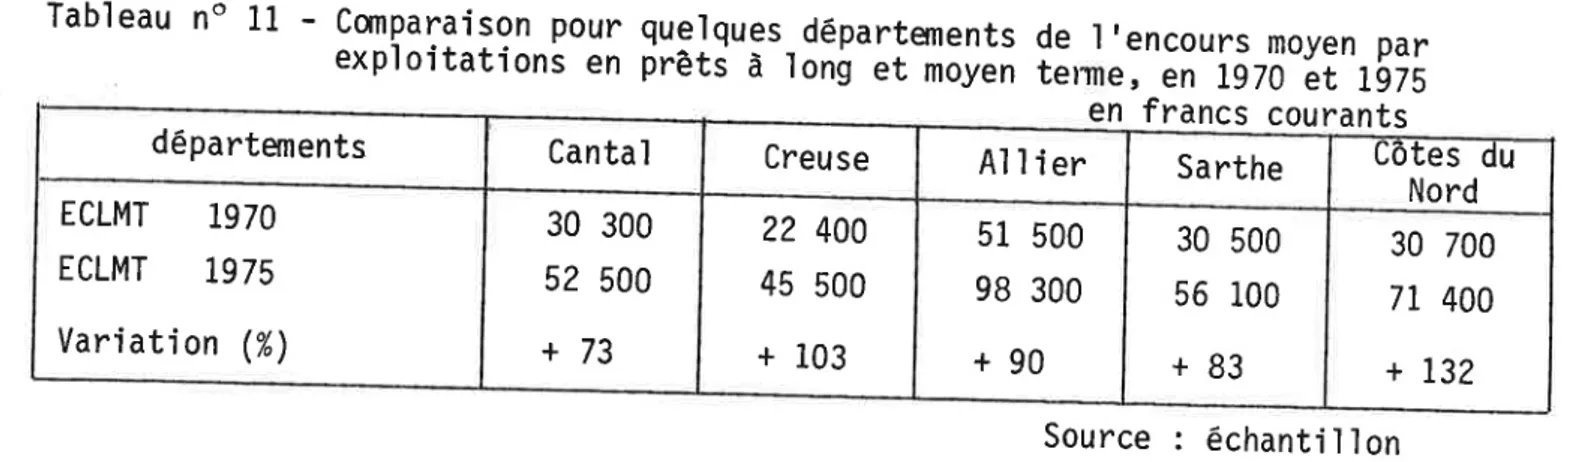 Tableau  no  11  -  exploitations  comparaison  pour  en  quelques_départements  prêtd  à  lon! et  moyen  de l,encours  terme,  en  1970  moyen  et  1975 par